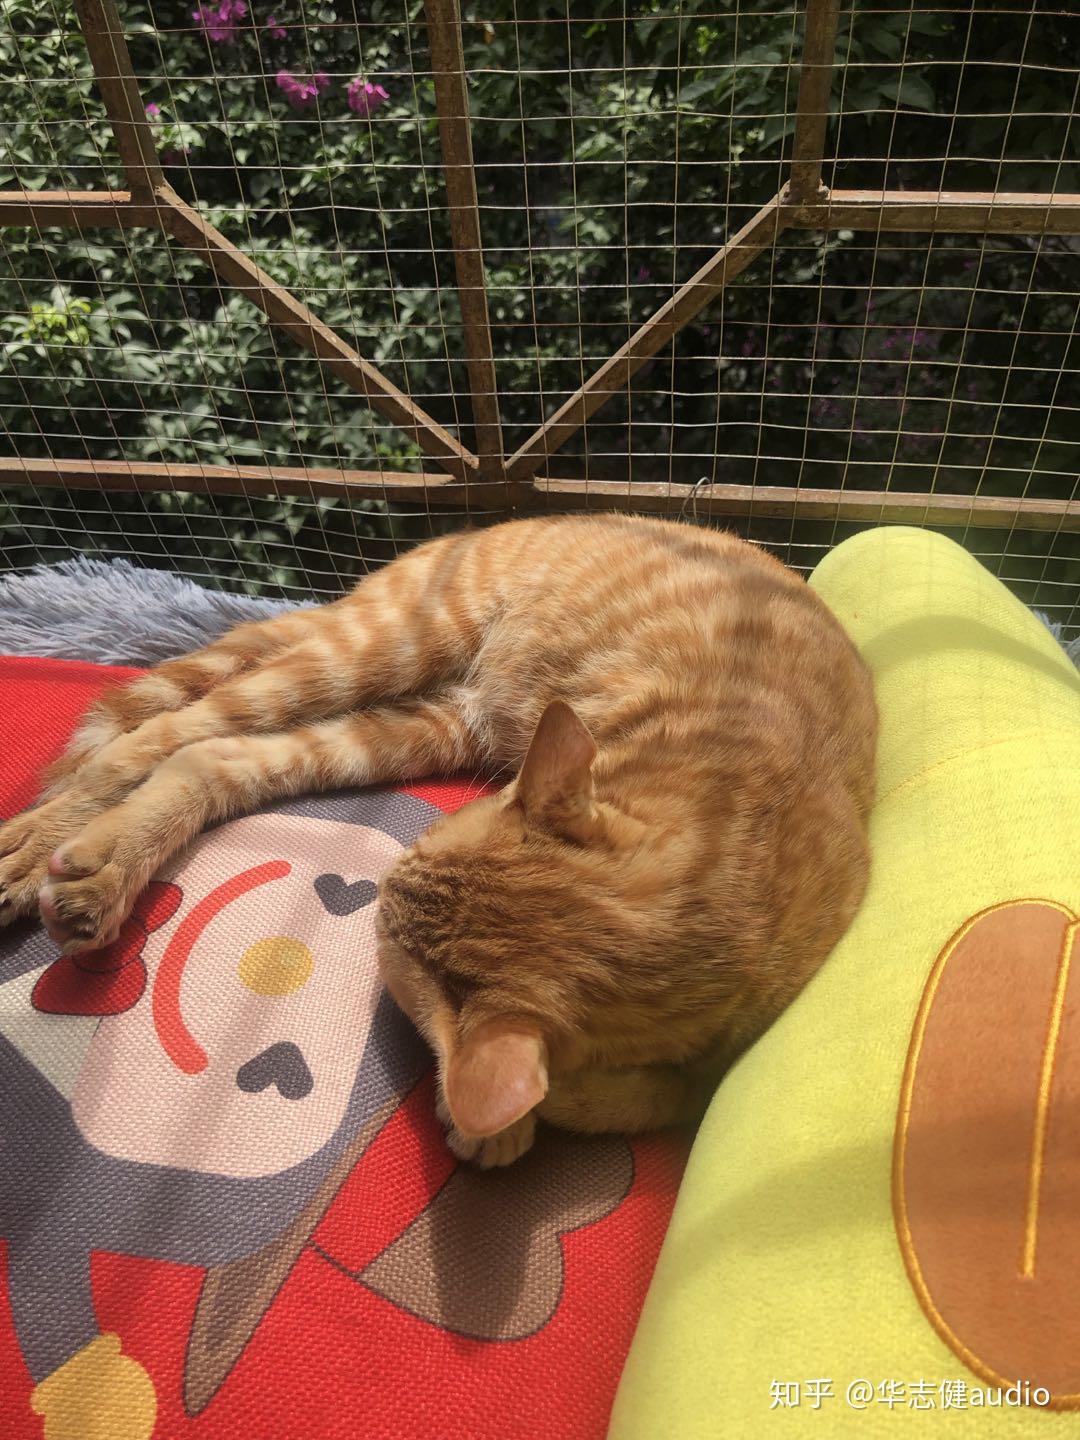 晒太阳的瞌睡猫 - 堆糖，美图壁纸兴趣社区